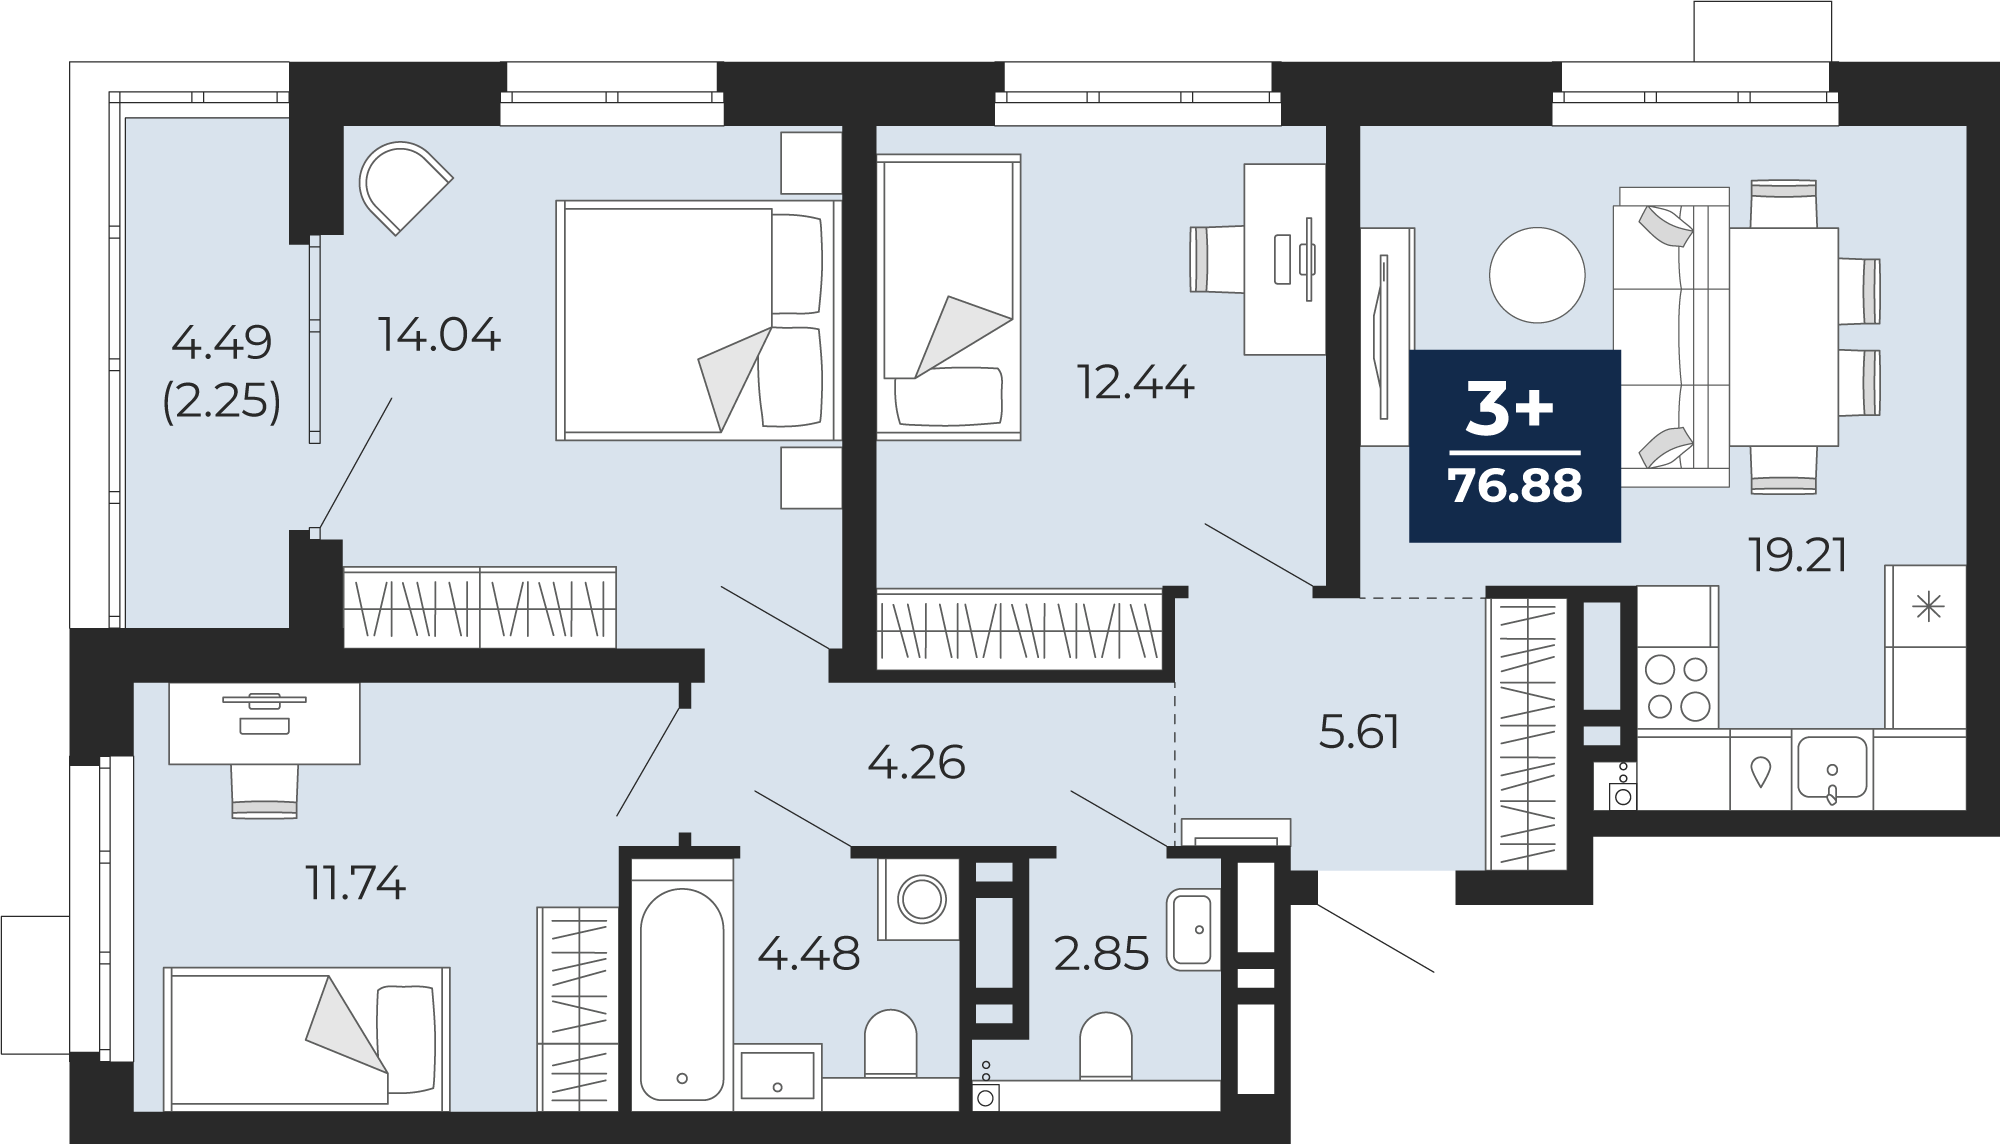 Квартира № 94, 3-комнатная, 76.88 кв. м, 13 этаж